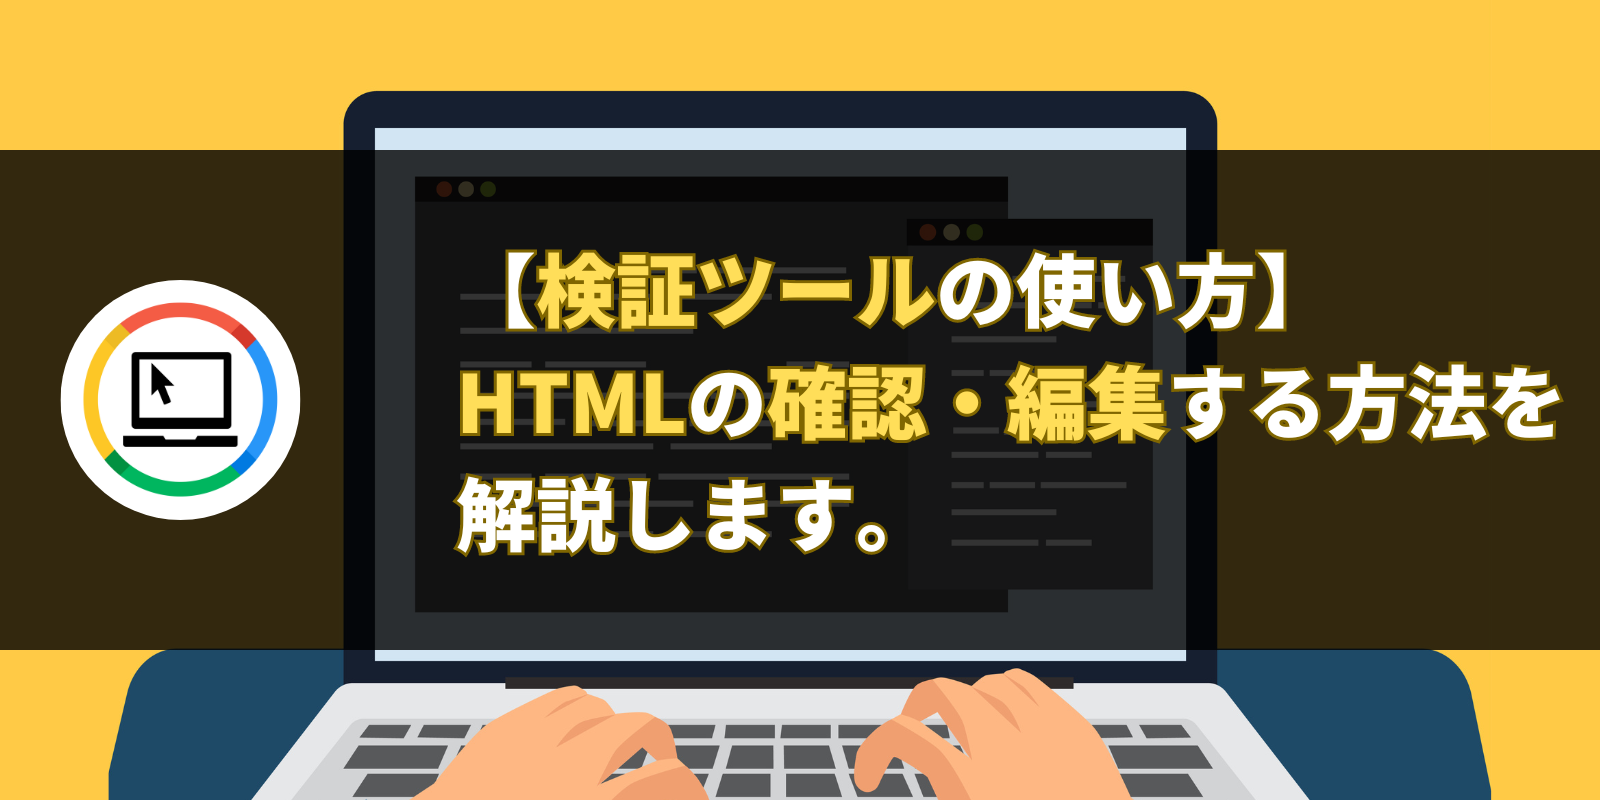 【検証ツールの使い方】HTMLの確認・編集する方法を解説します。